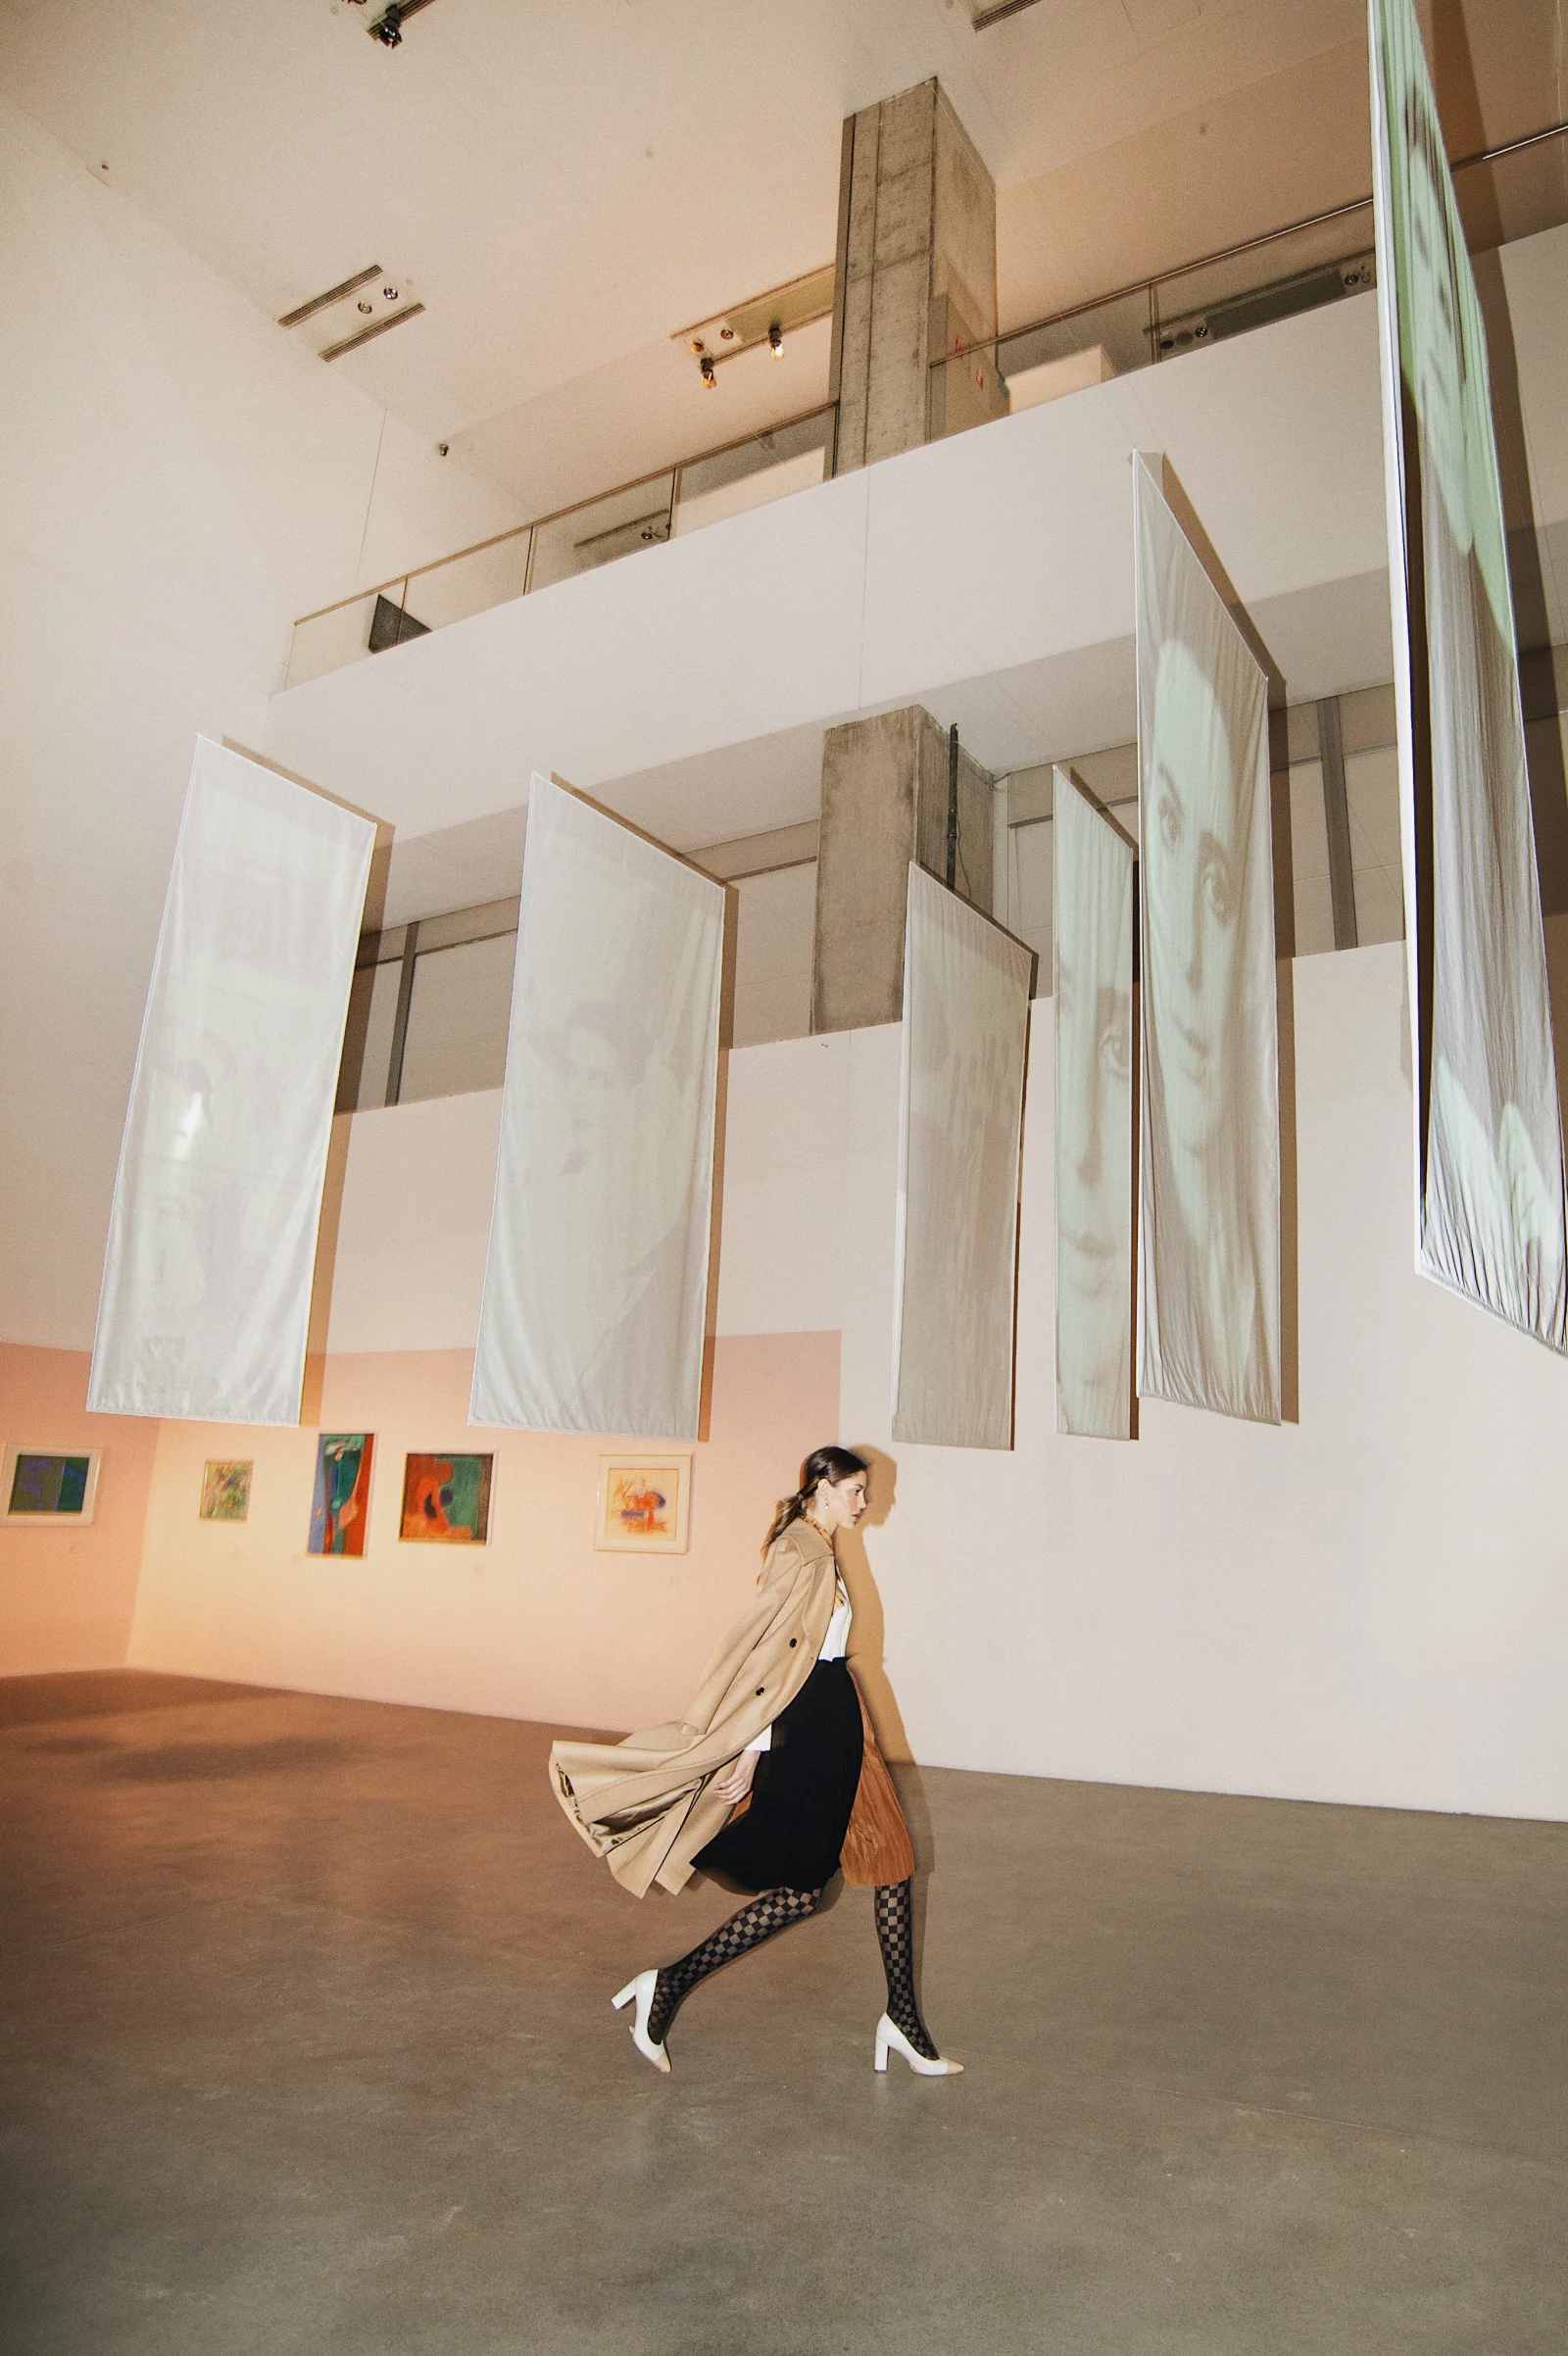 Museum of Contemporary Art Zagreb 1 by Simone SERLENGA